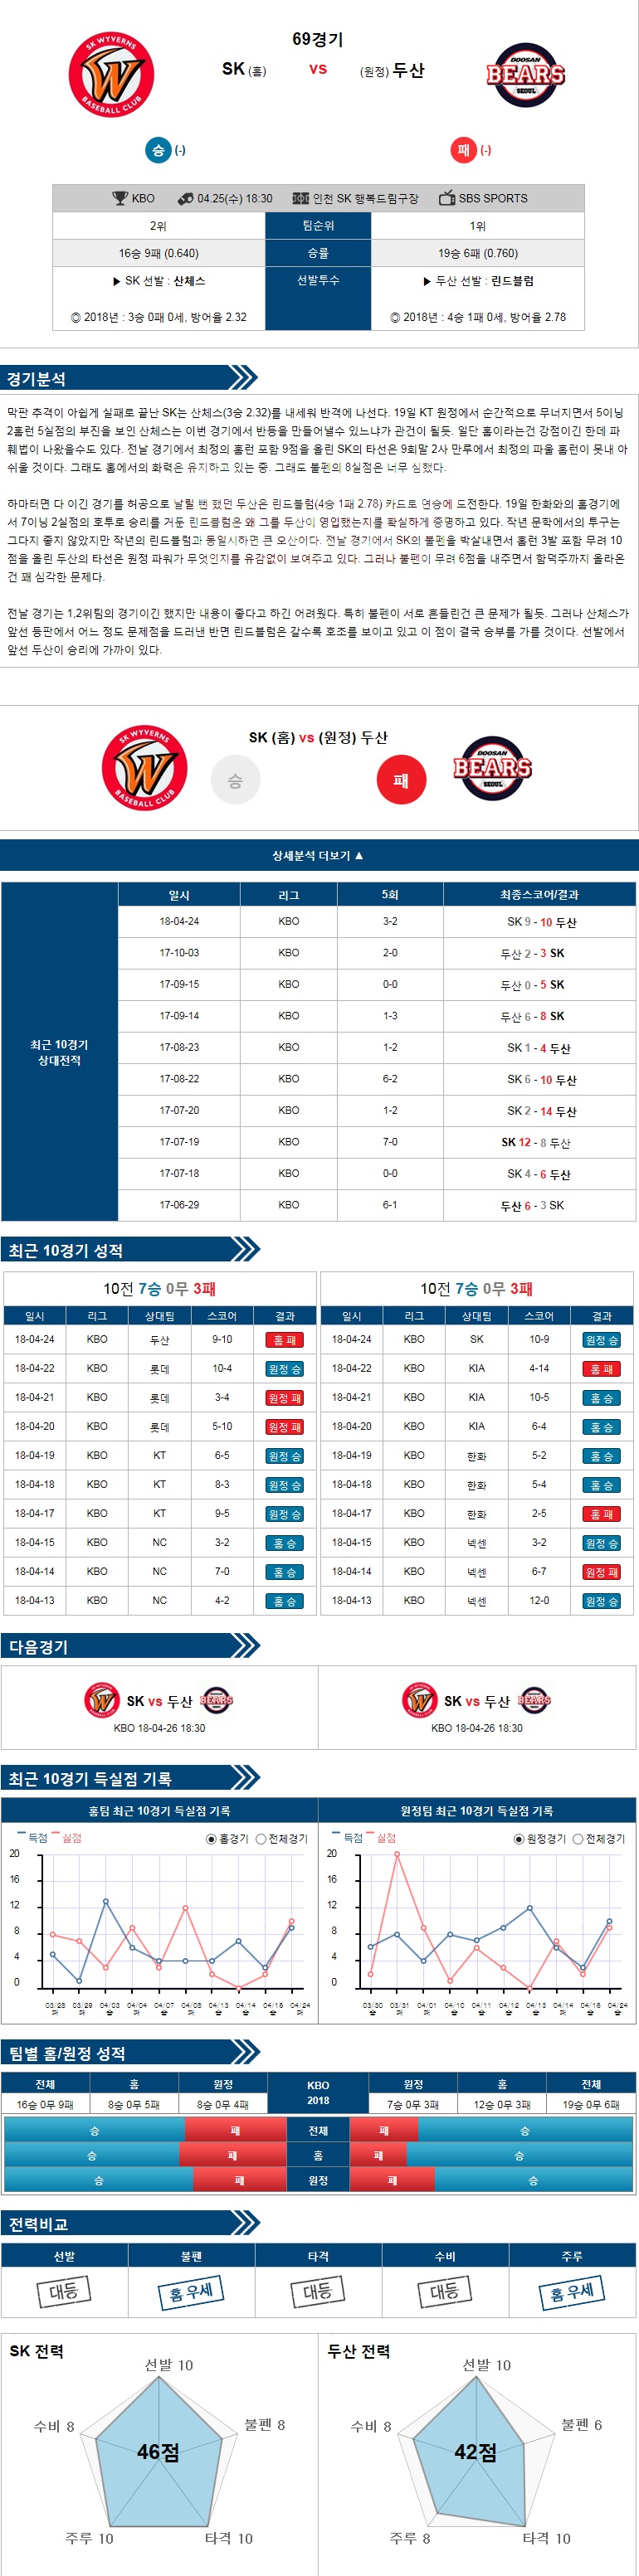 4-25 [KBO] 18:30 야구분석 SK vs 두산